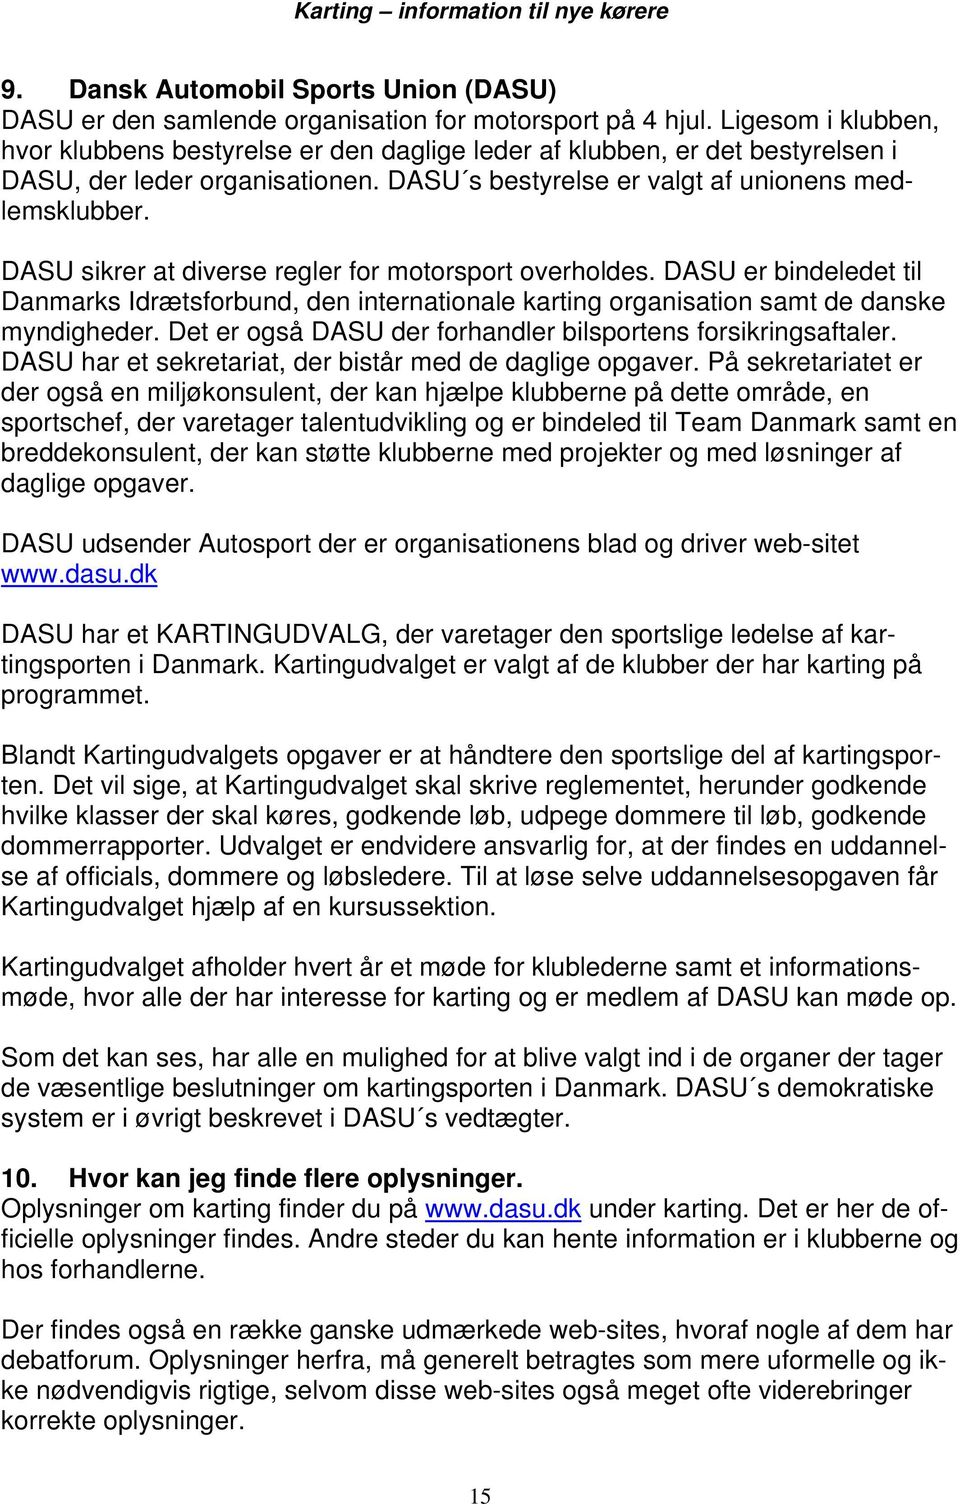 DASU sikrer at diverse regler for motorsport overholdes. DASU er bindeledet til Danmarks Idrætsforbund, den internationale karting organisation samt de danske myndigheder.